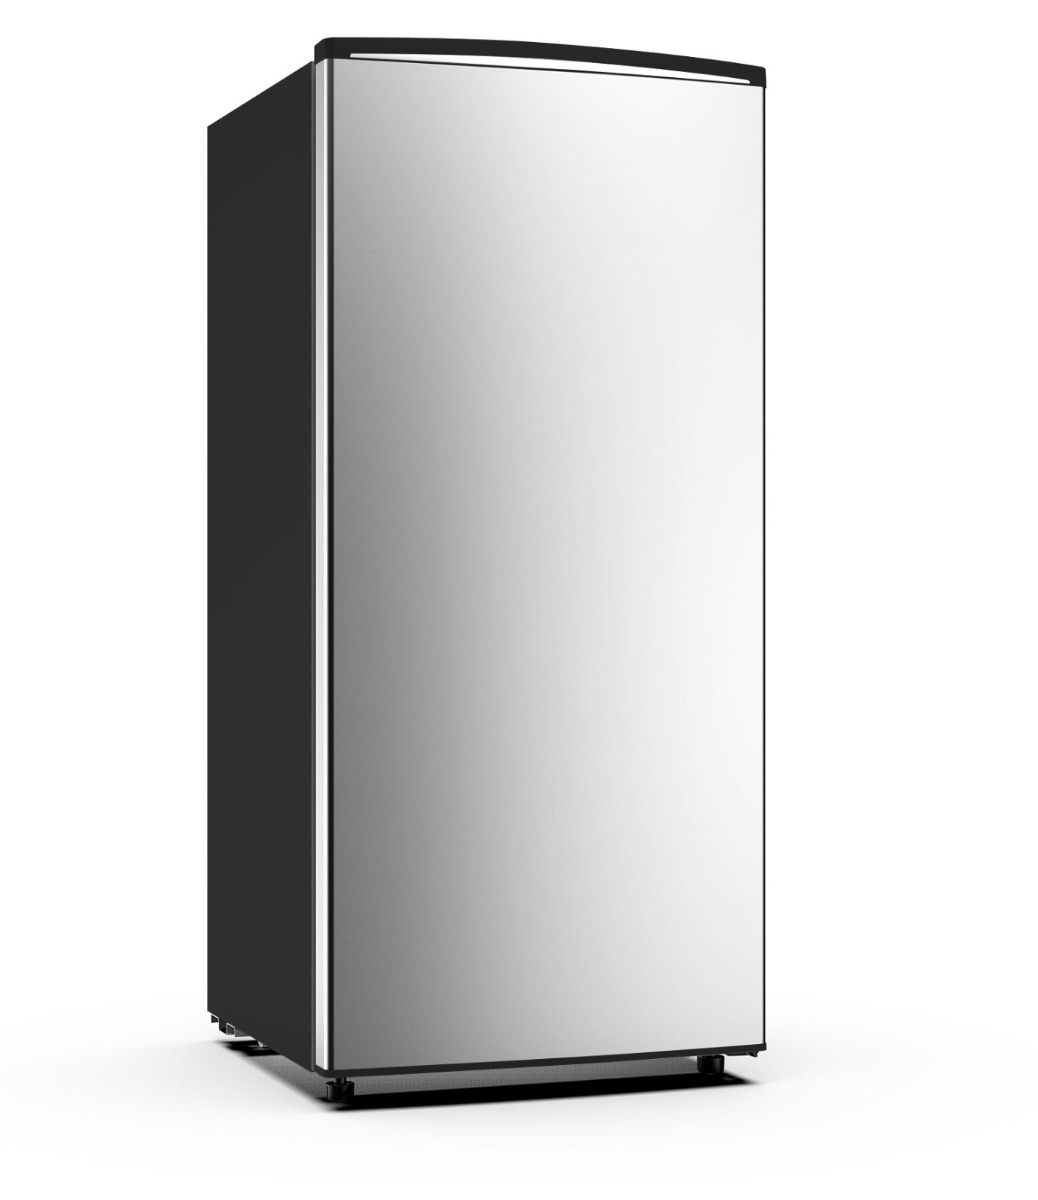 Justinghouse Single Door Refrigerator, 6.3 Feet, 180 L, Silver, Jsrf-3199